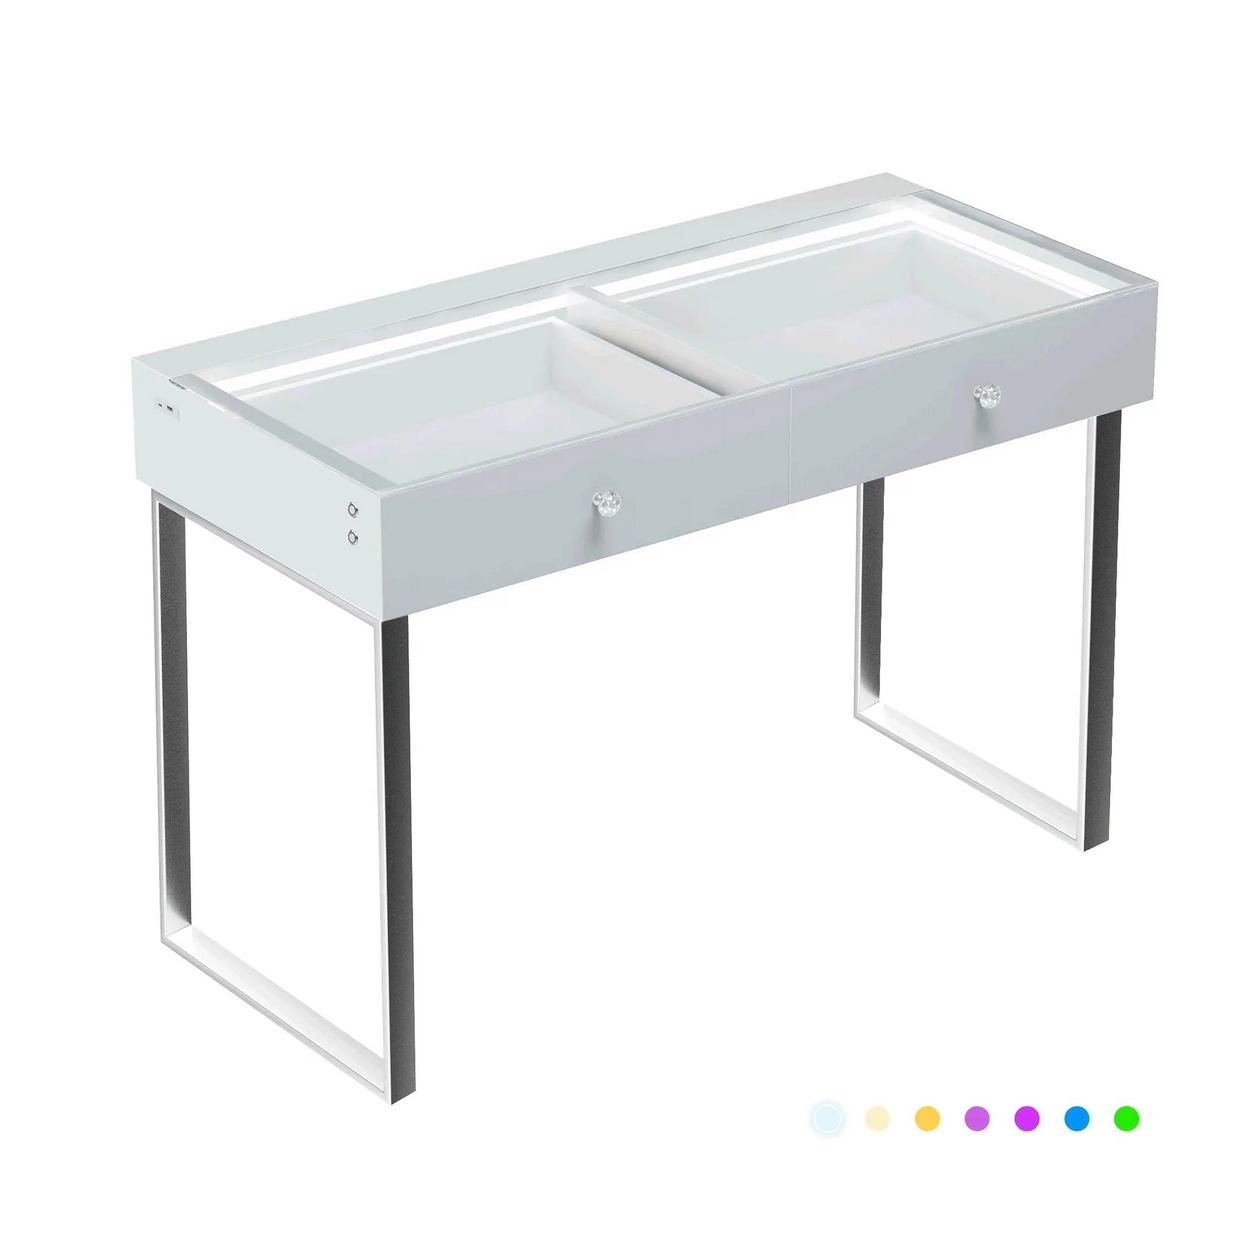 Yli 39 Inch Vanity Desk Pro, 2 Drawers, USB Port, RGB, Glass Tabletop White - Saltoro Sherpi